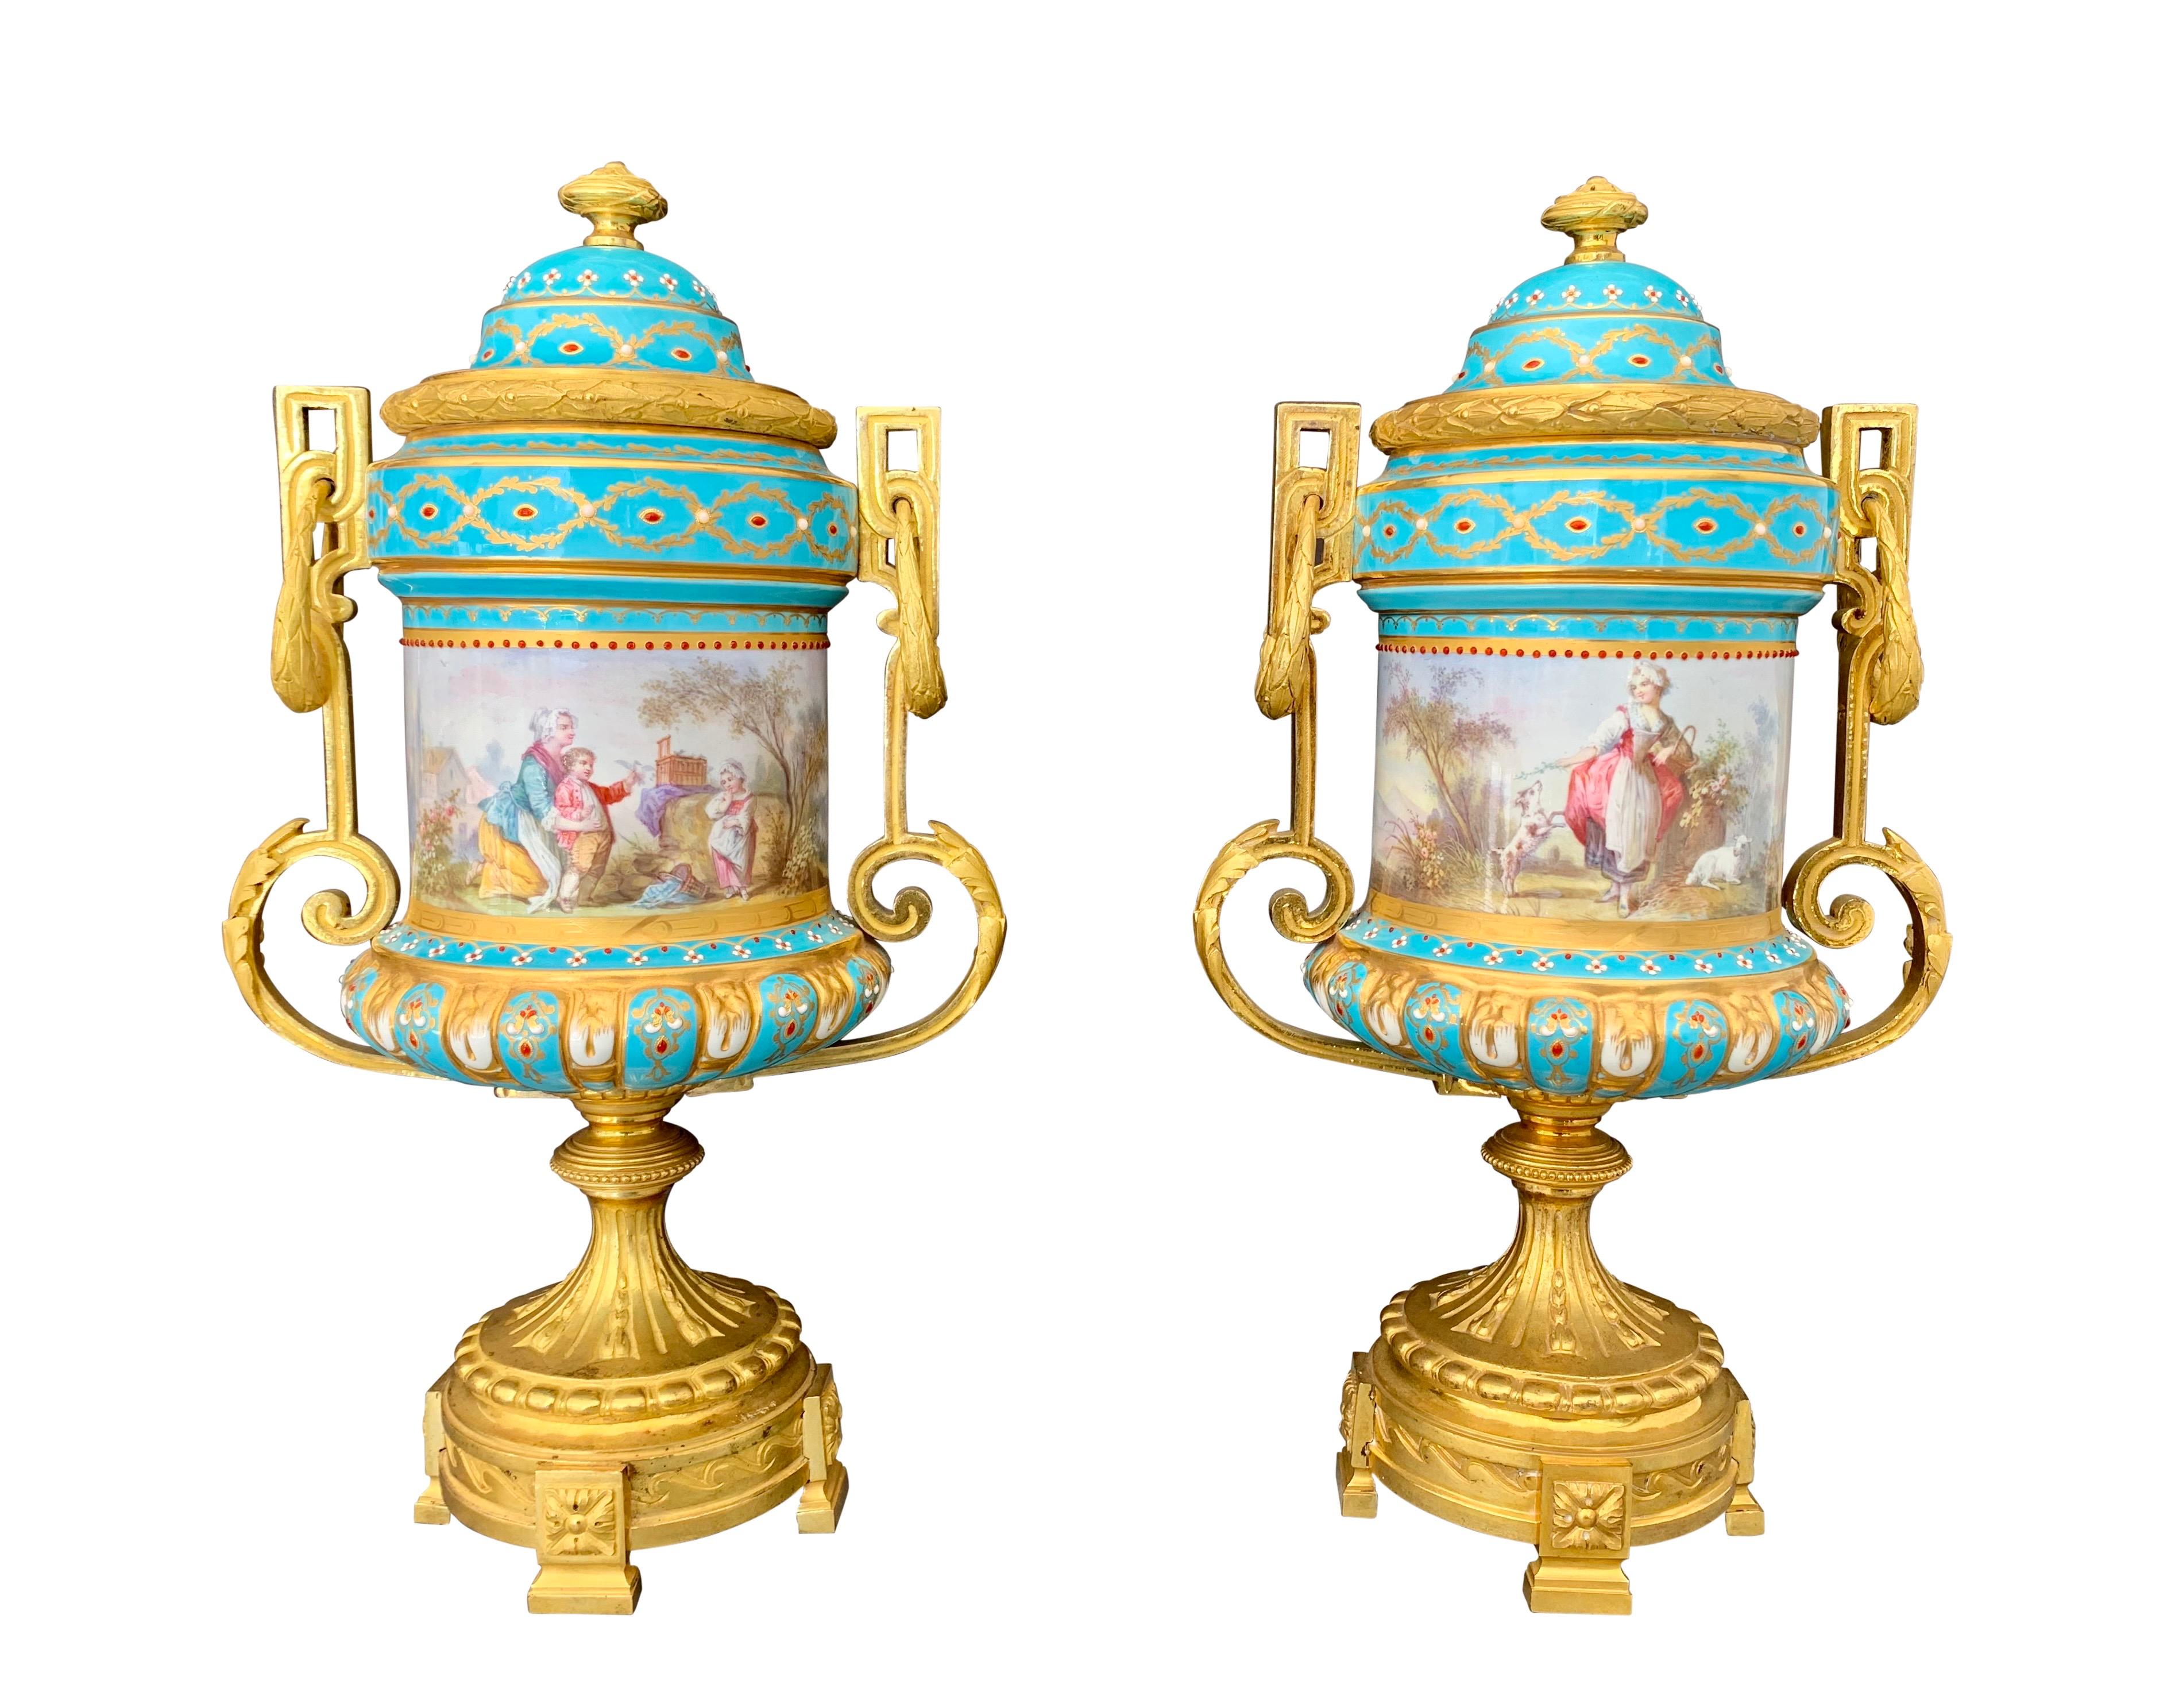 Une très belle paire de vases/urnes de style Sèvres français du 19ème siècle, peints à la main, en porcelaine ornée de bijoux et montés en bronze. Chaque urne a un fond turquoise, peint de scènes familiales classiques sur les deux faces,

Circa